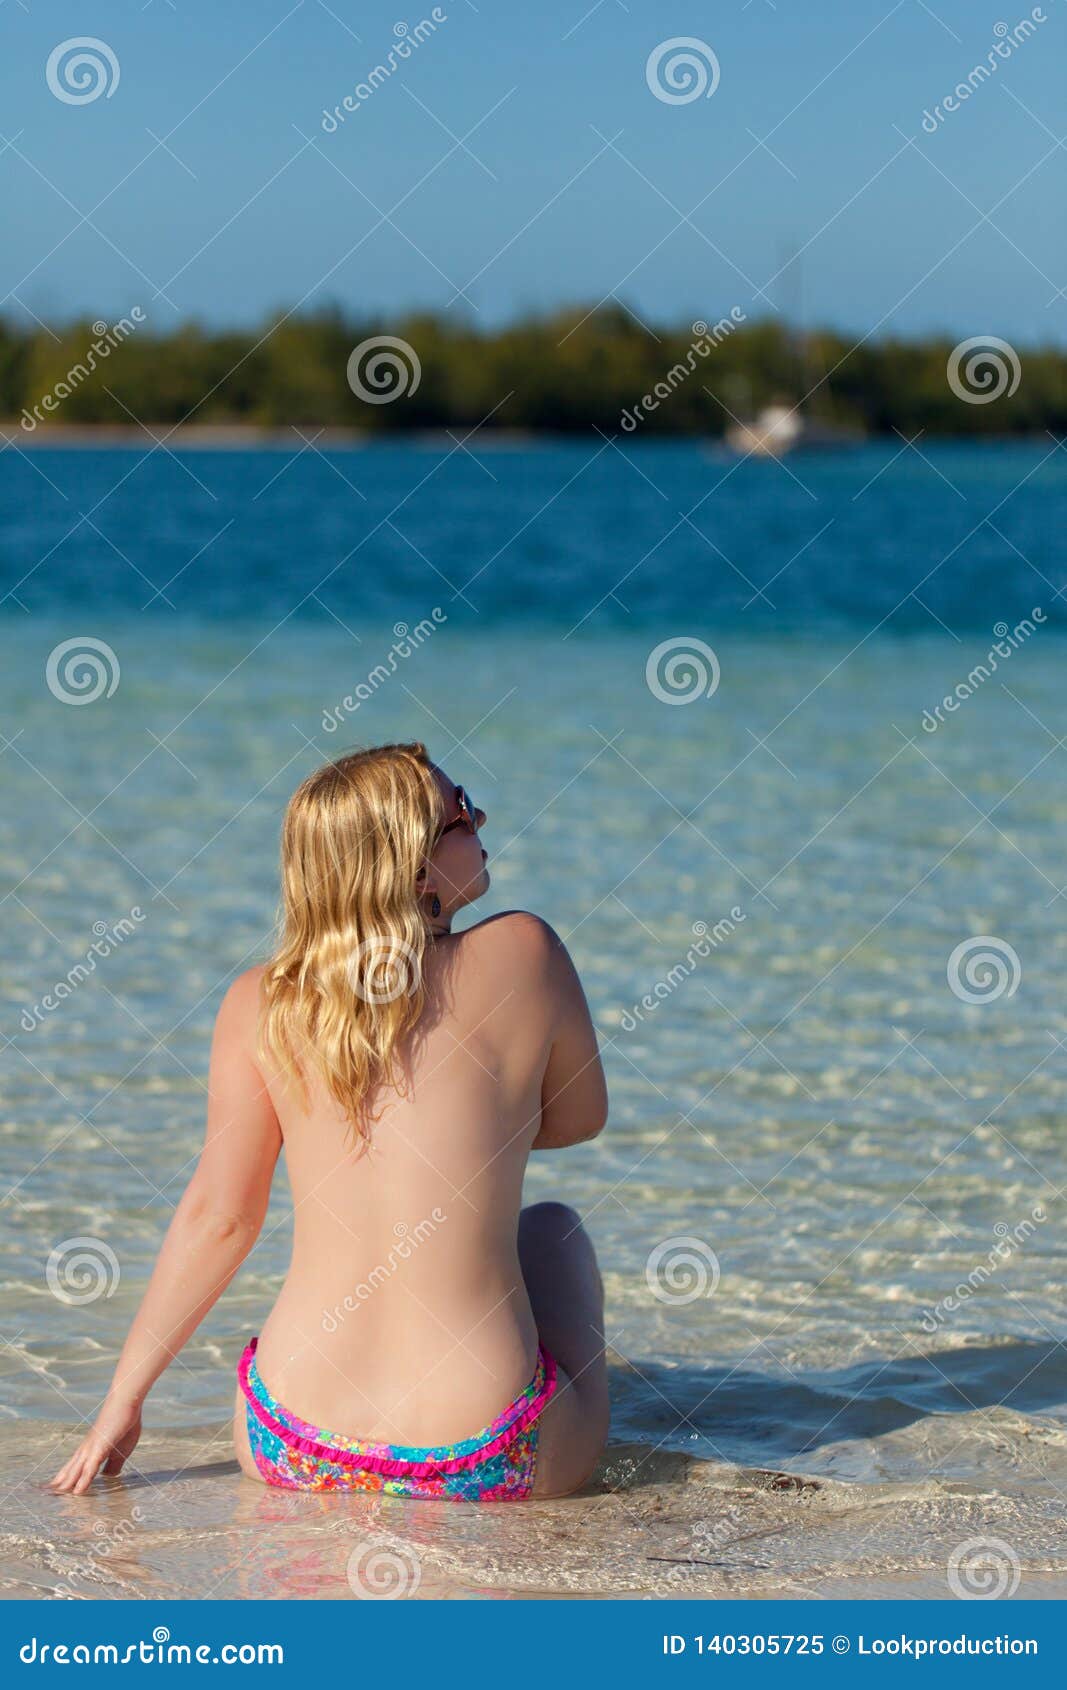 young teen nudist beach sex scene